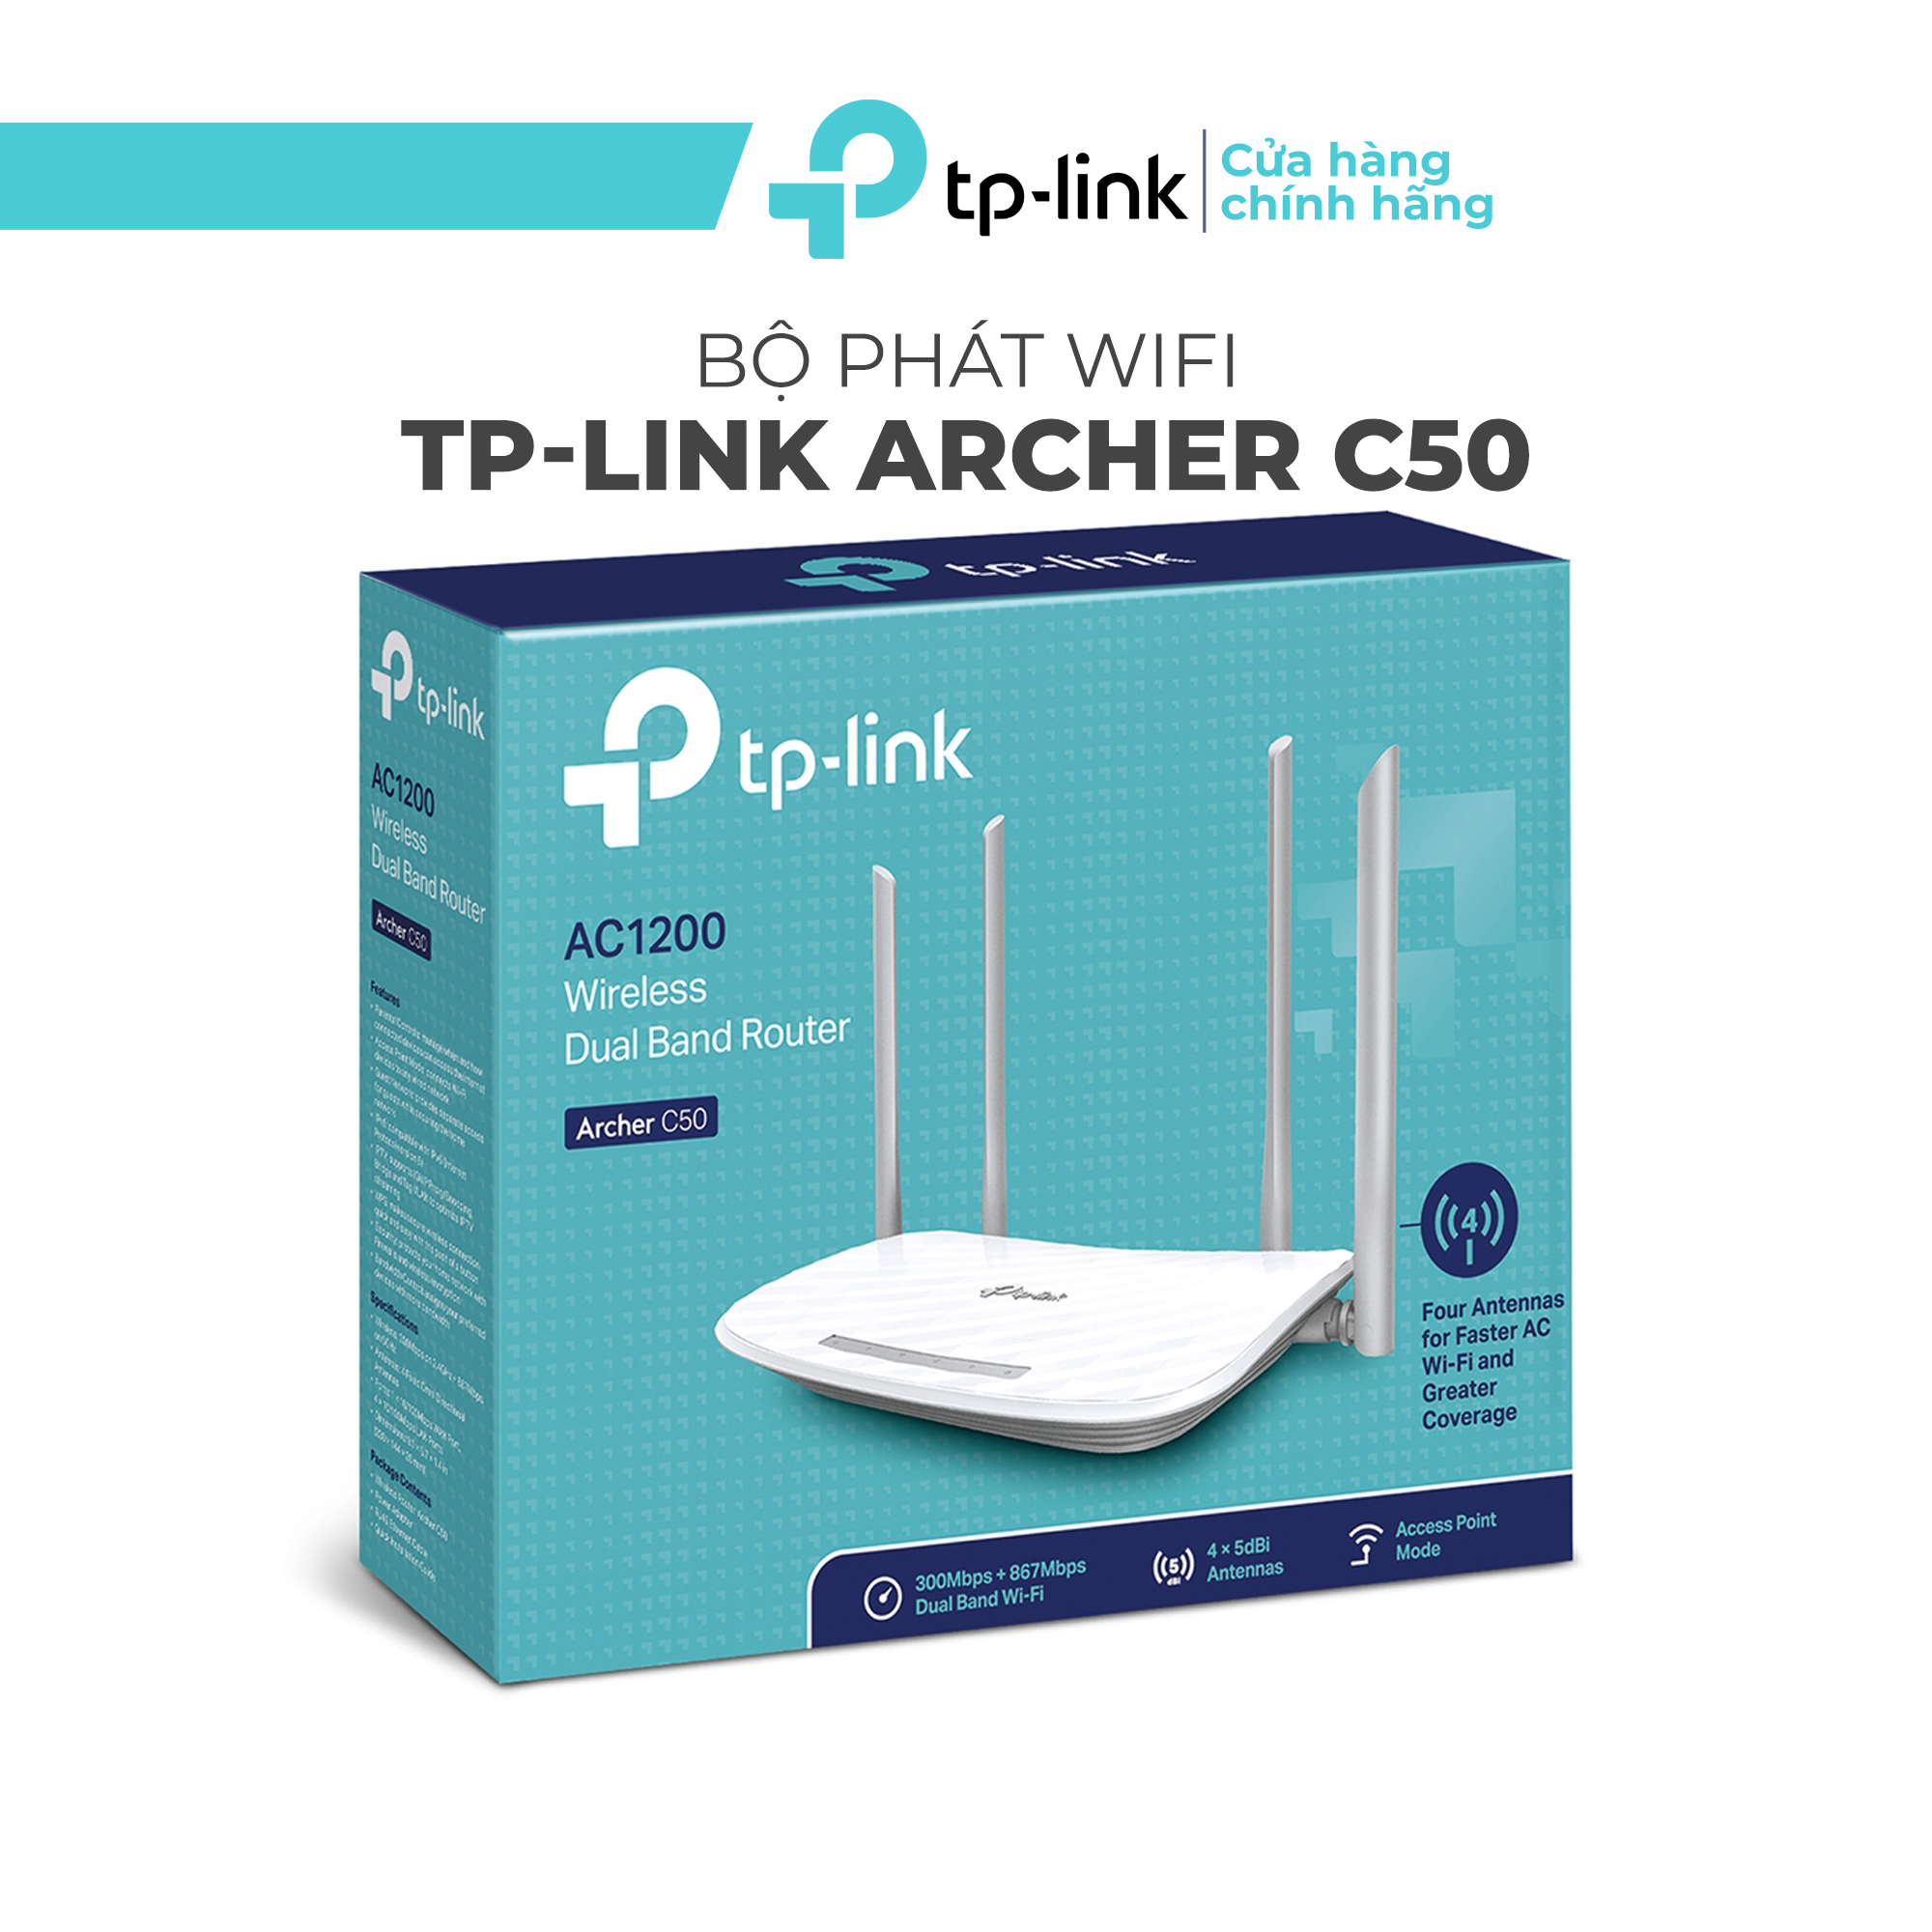 Bộ phát wifi TP-Link Archer C50 - Router wifi Băng Tần Kép AC1200 mbps 4 ăng ten phủ sóng siêu rộng công nghệ MU-MIMO giảm lag giao diện tiếng việt dễ dàng cài đặt